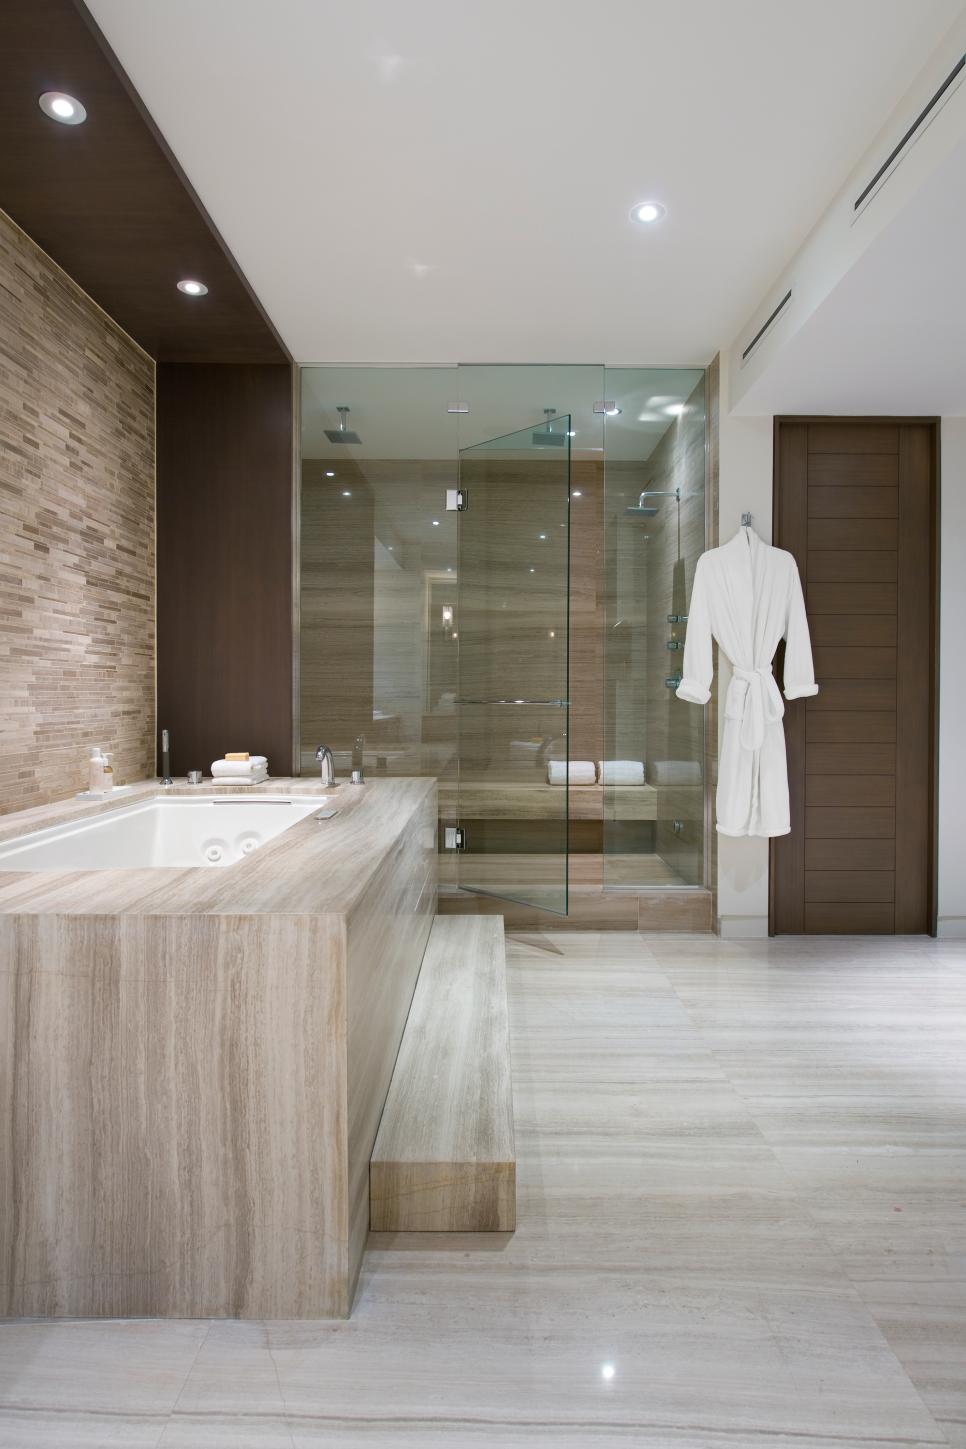 Luxurious Spa-Style Bathroom with Marble Floors | HGTV